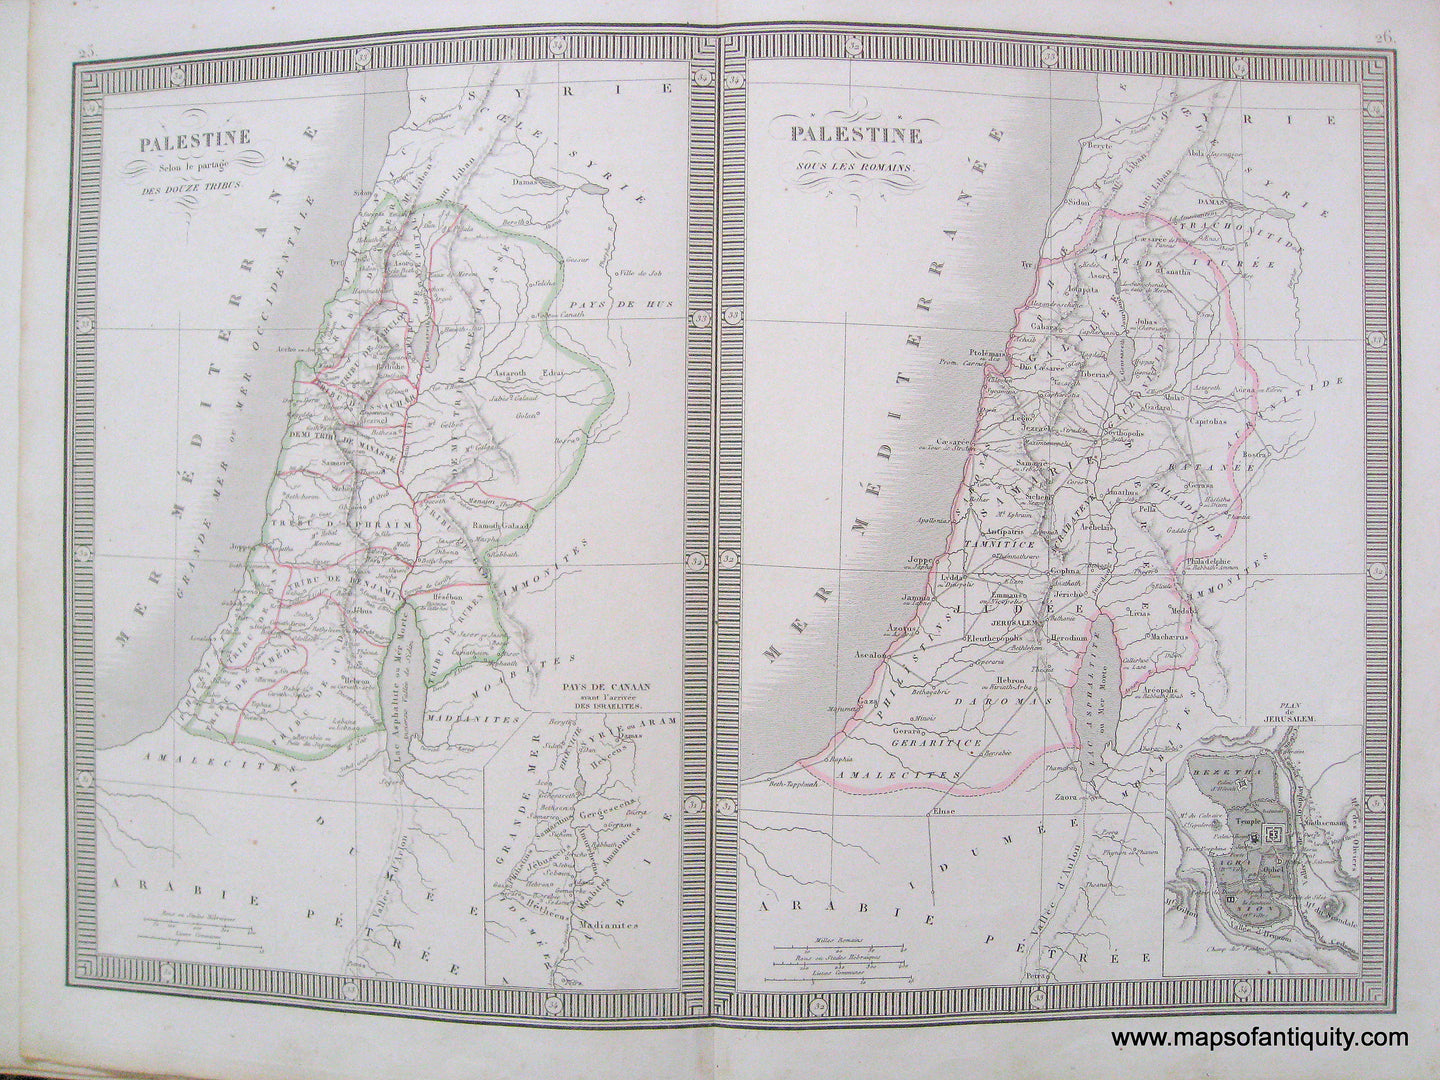 Antique-Hand-Colored-Map-Palestine-Selon-de-Partage-des-Douze-Tribes-(Palestine's-Twelve-Tribes)-and-Palestine-sous-les-Romains-(Palestine-under-the-Romans)-1846-Monin-Palestine-1800s-19th-century-Maps-of-Antiquity